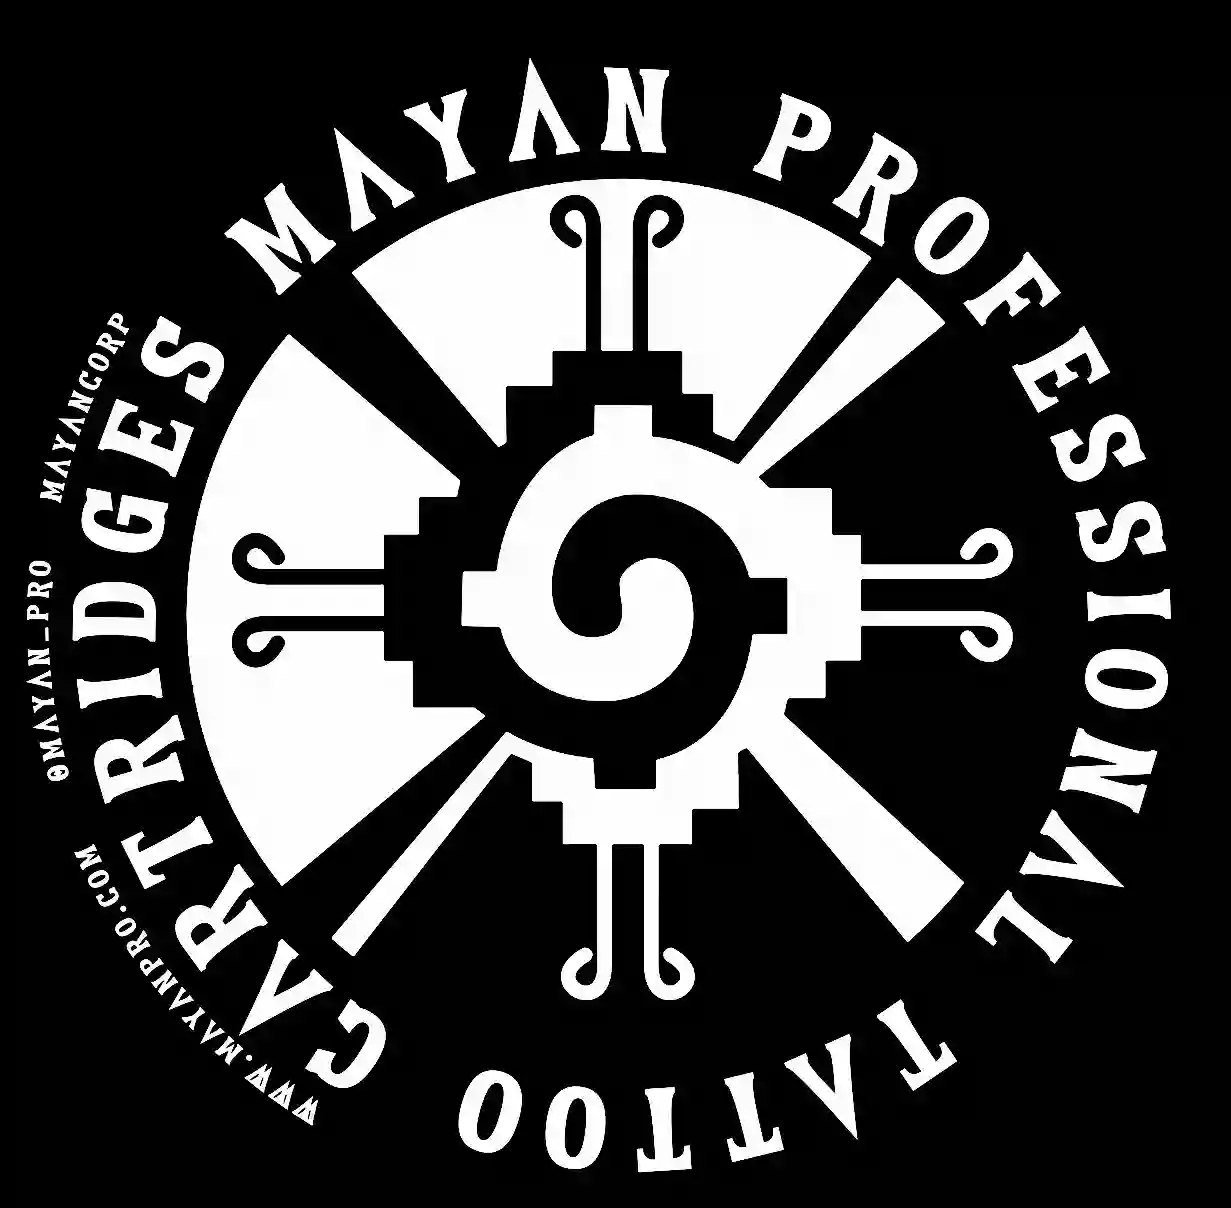 Mayan Pro